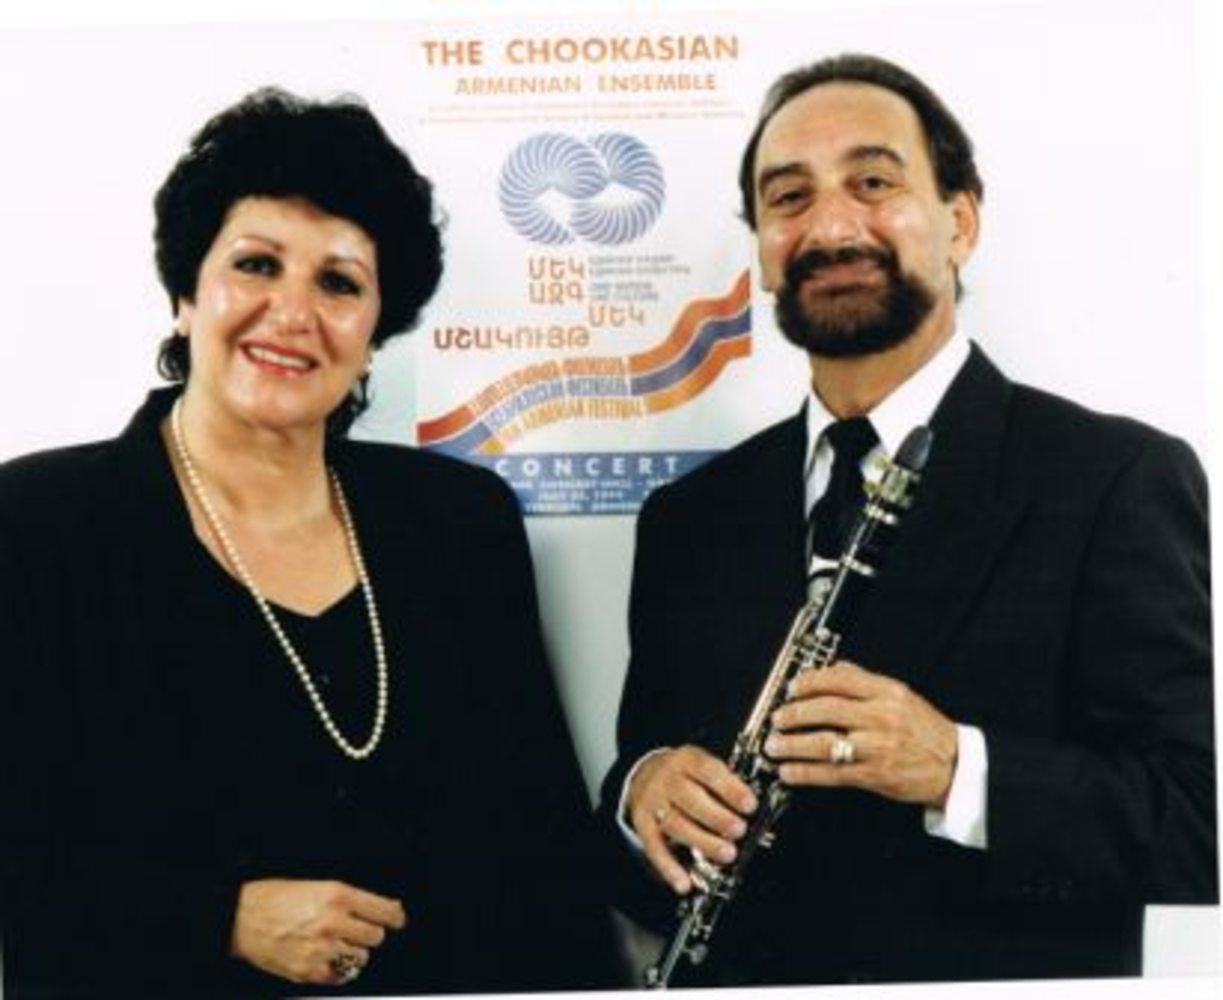 Two members of the Chookasian Armenian Folk Ensemble